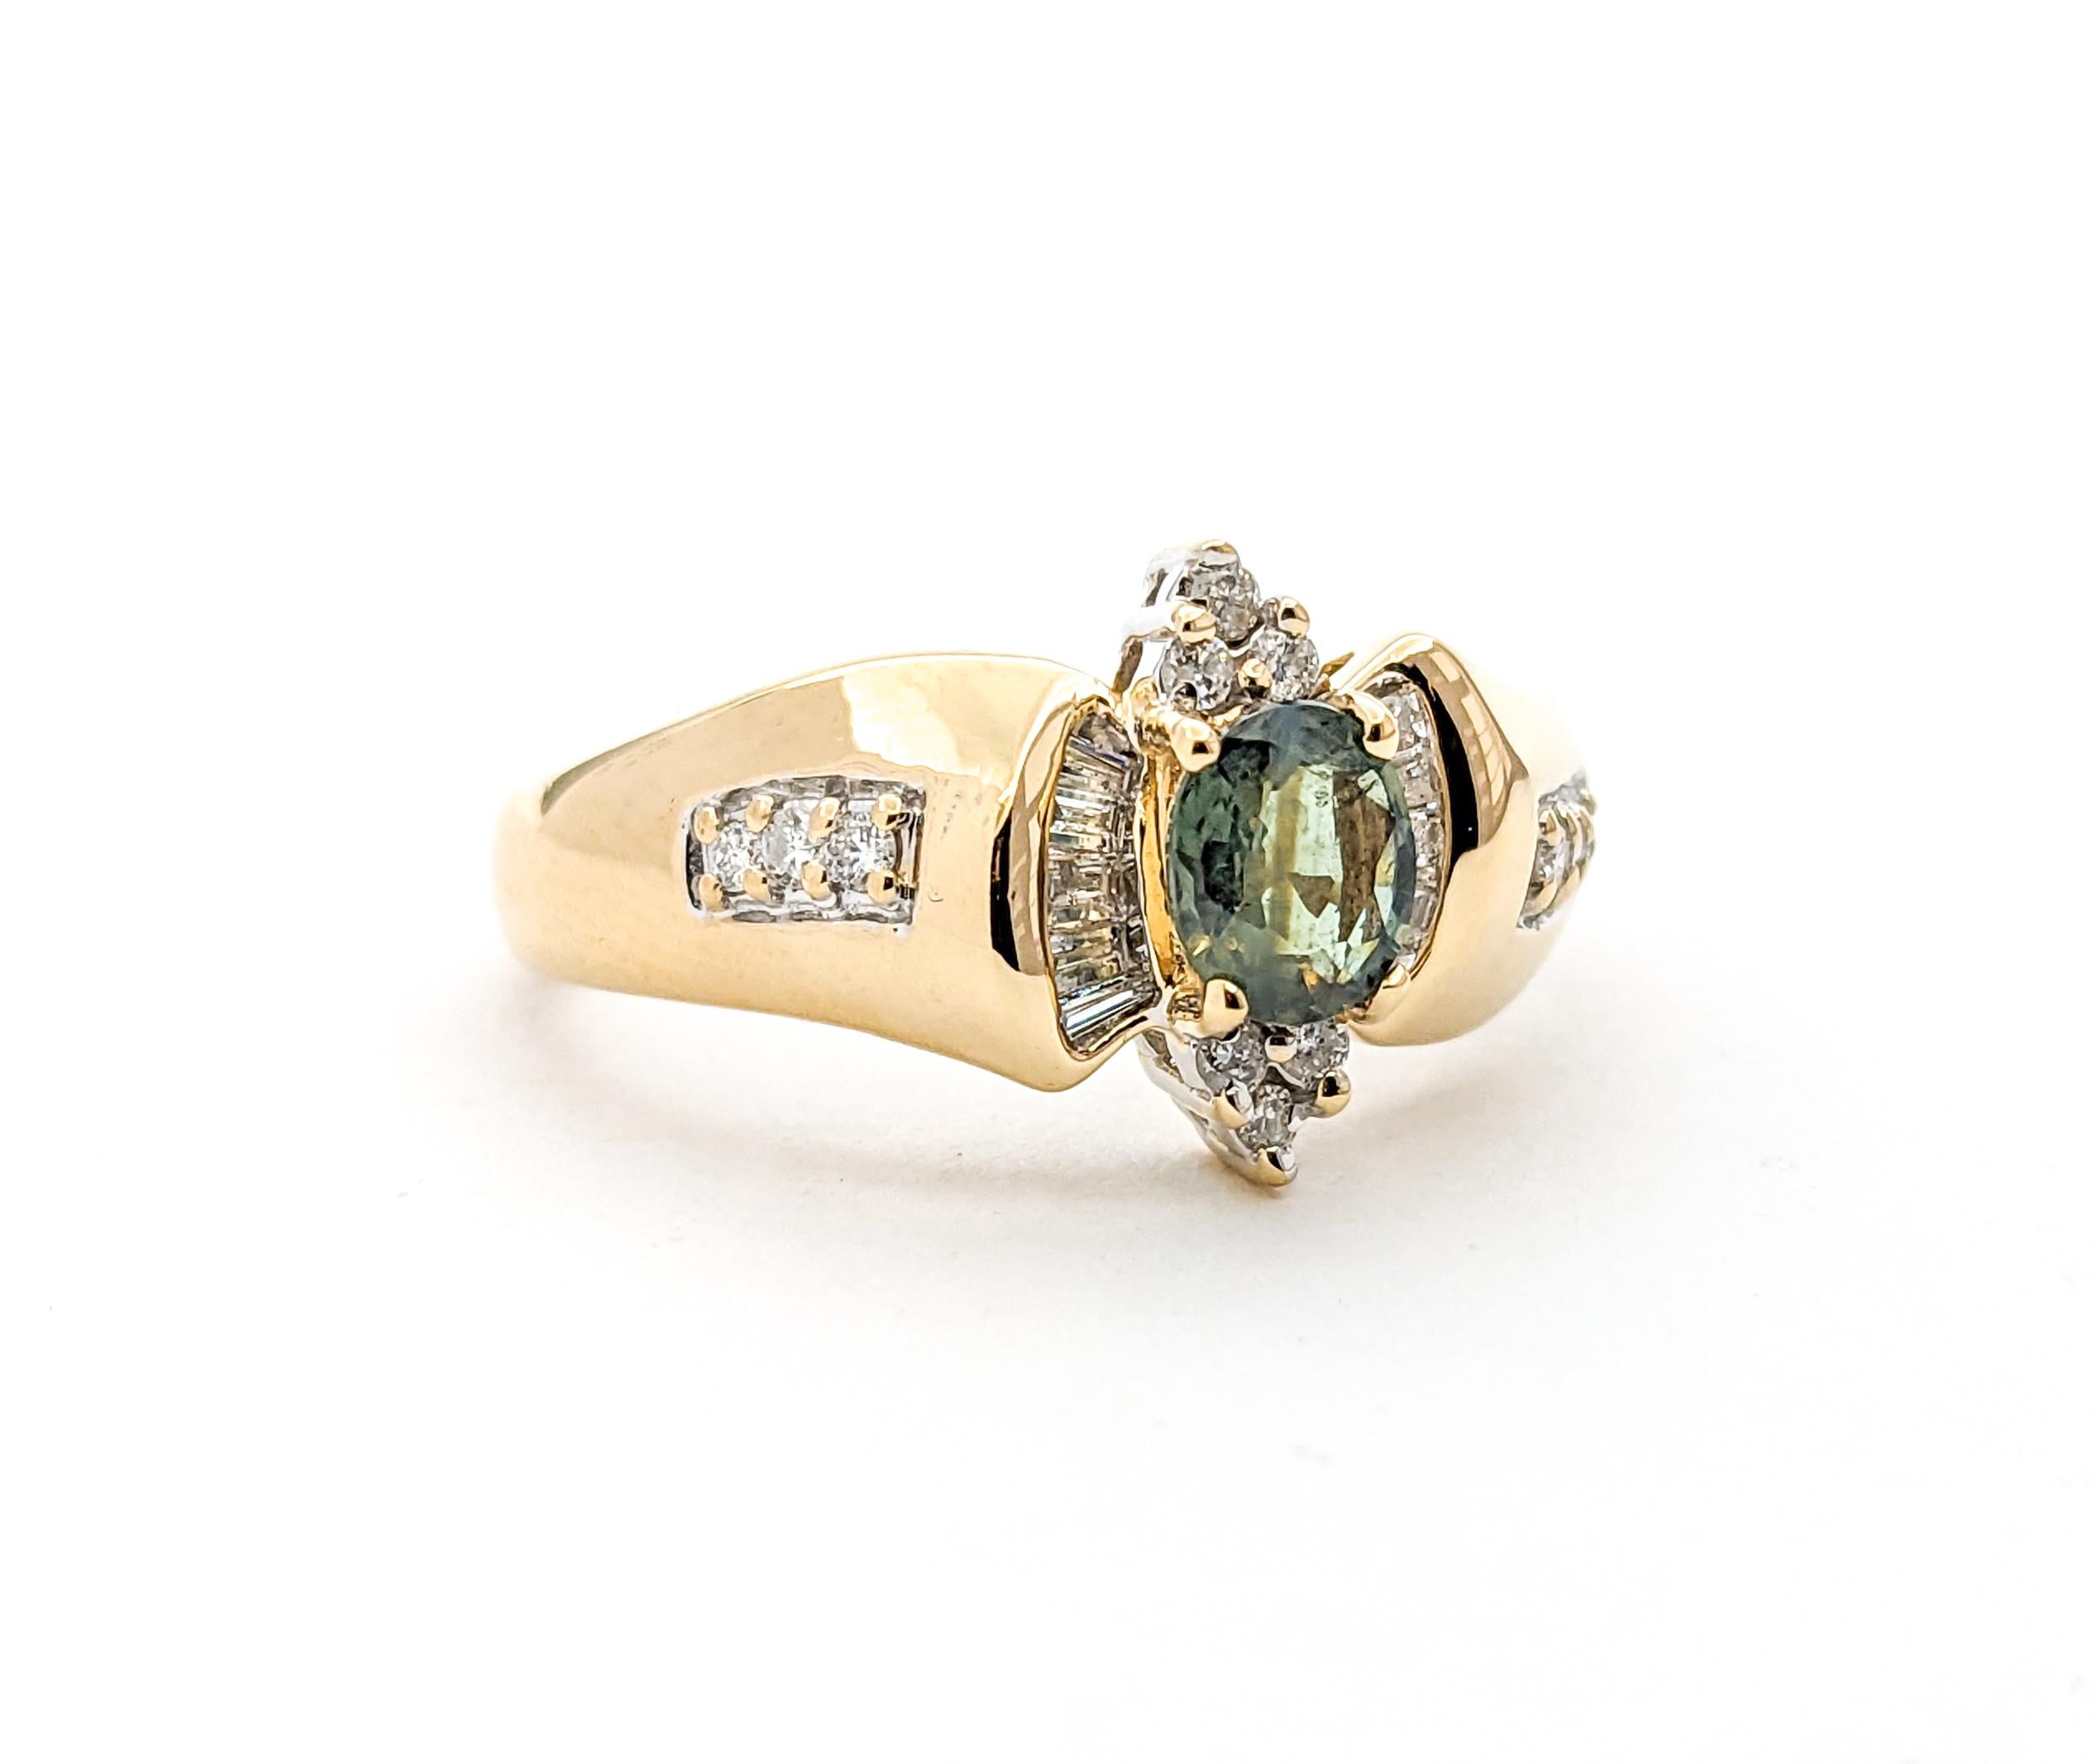 Natürlicher Farbwechsel Alexandrit & Baguette Diamant Ring in Gelbgold

Wir stellen Ihnen diesen fantastischen Alexandrit-Ring aus 14k Gelbgold vor. Das Herzstück dieser Kreation ist ein fesselnder und seltener .49ct natürlicher Farbwechsel Marquise